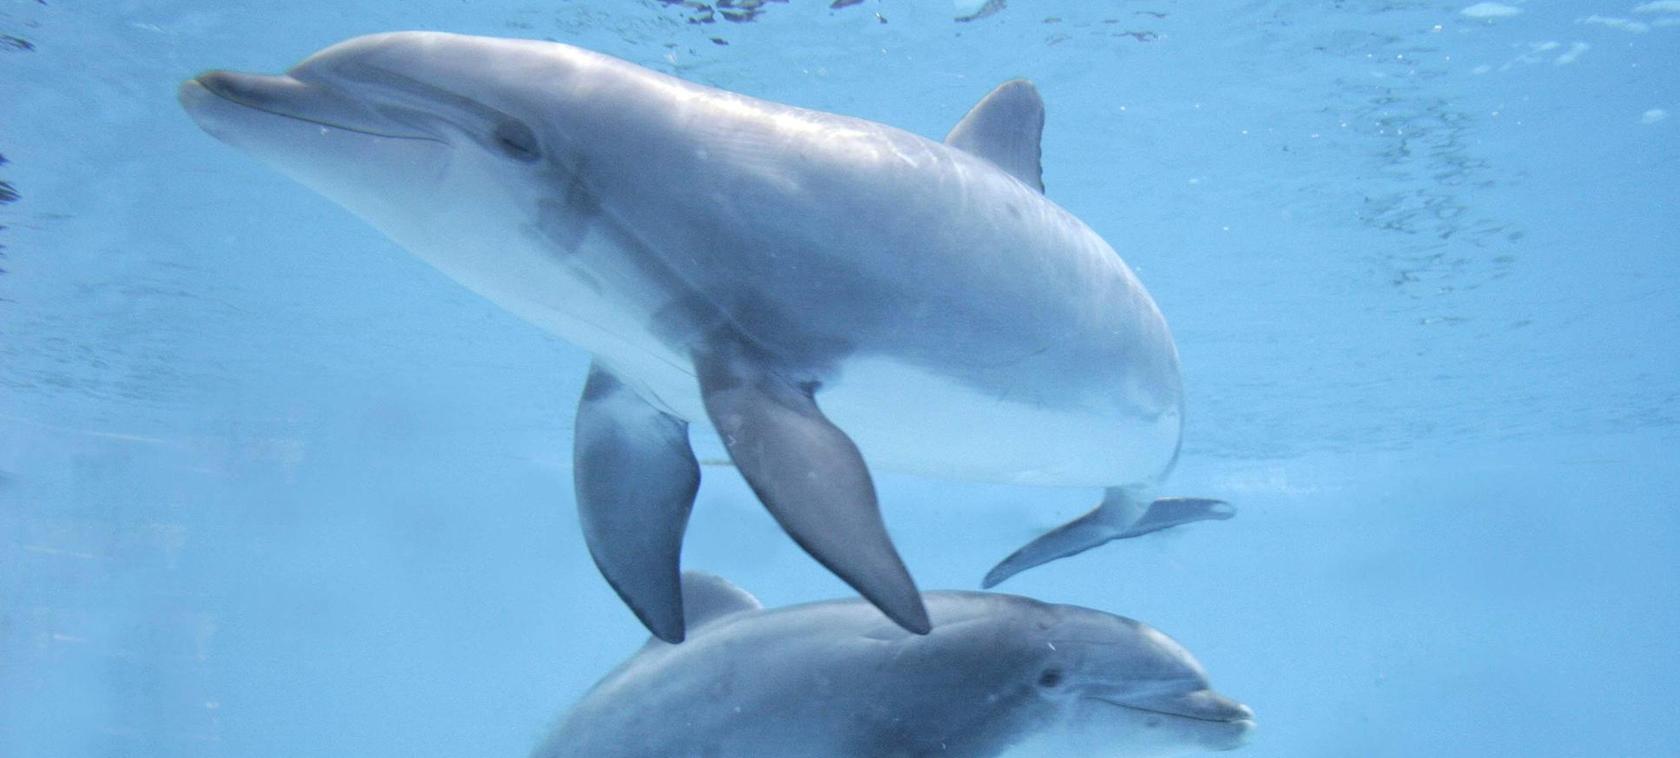 Nürnberg: Streit um Ausweichbecken für Delfinlagune